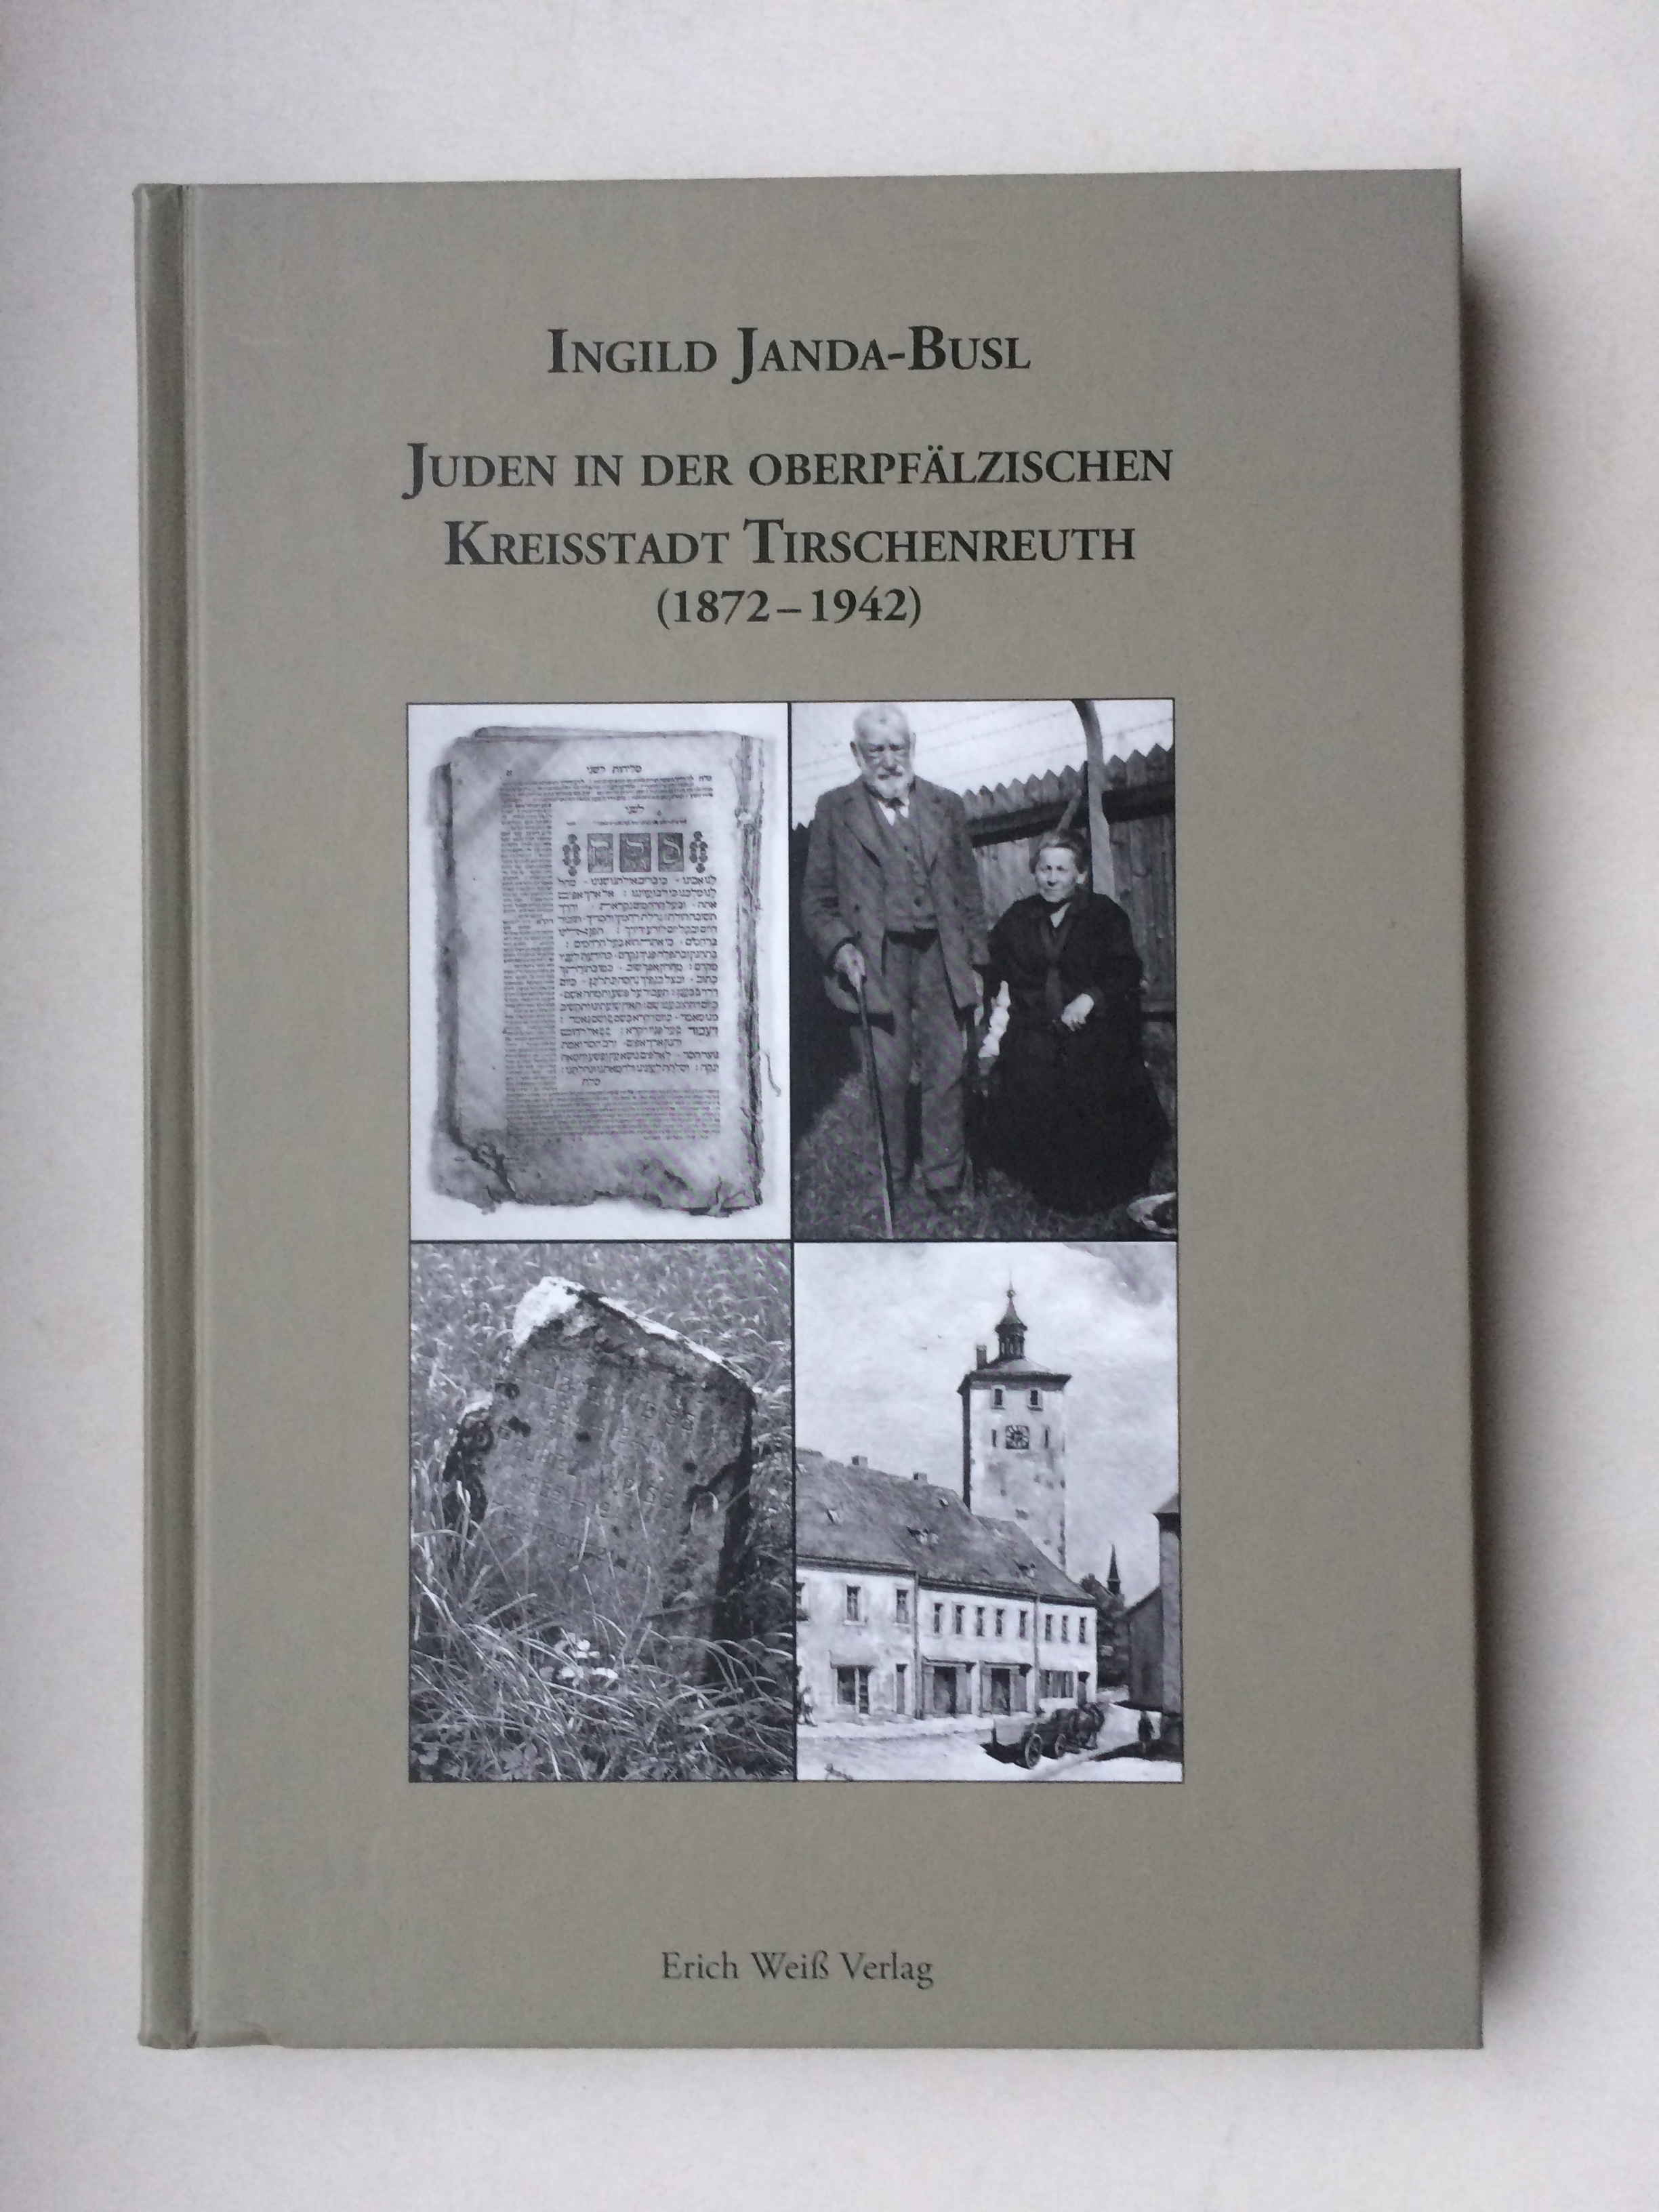 Juden im Landkreis Tirschenreuth (1872-1942) - Ingild Janda-Busl